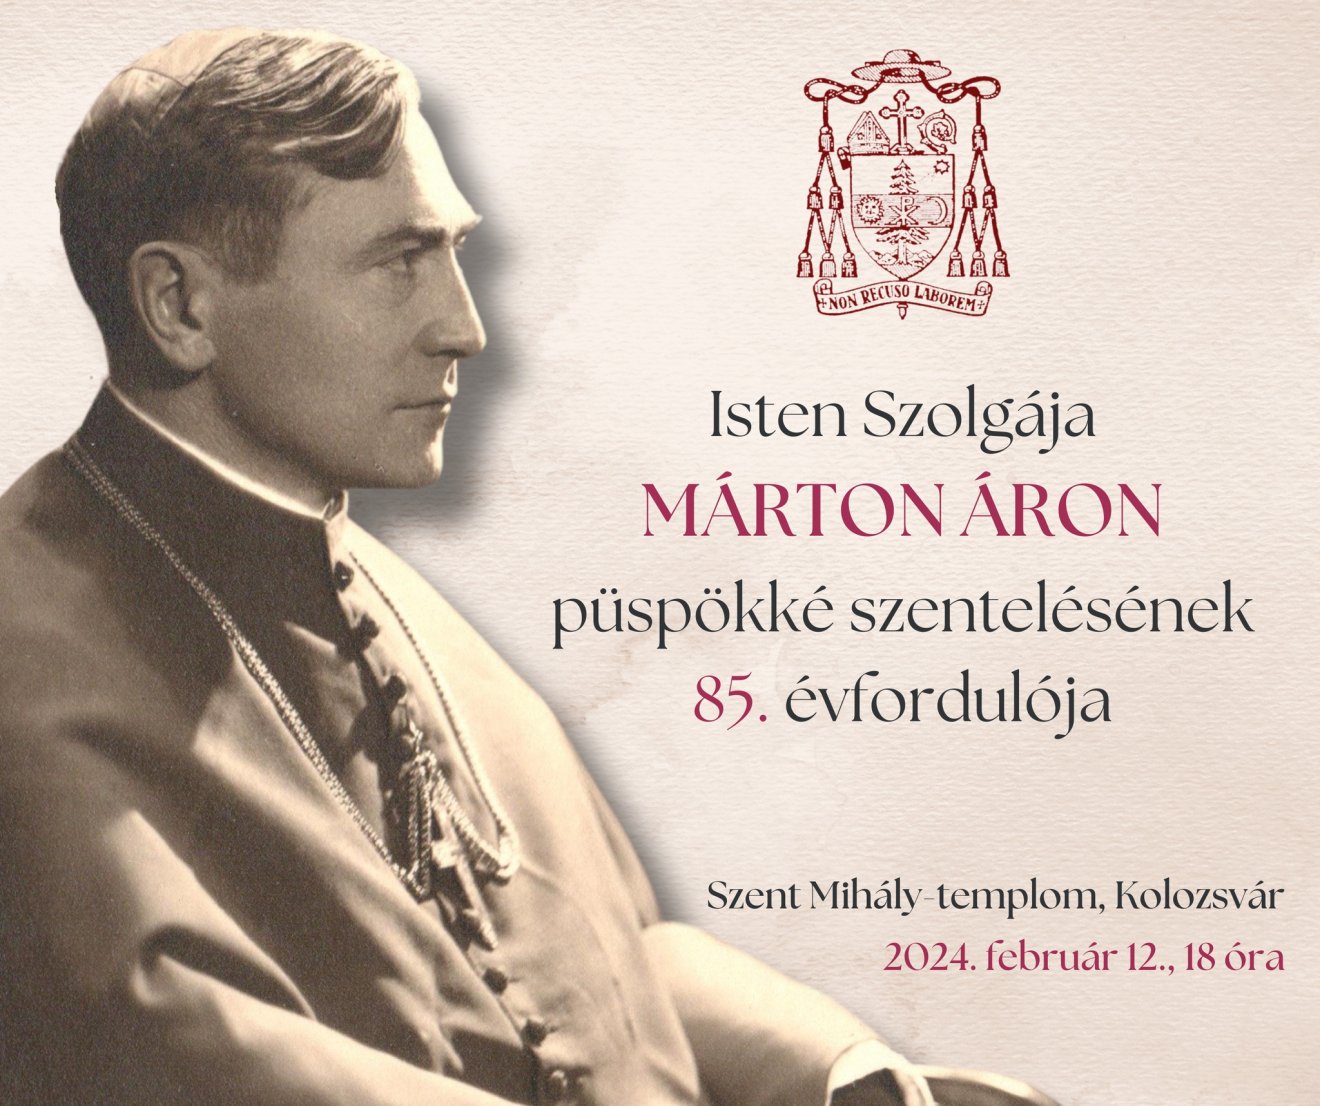 Márton Áron püspökké szentelésének 85. évfordulója alkalmából tartanak ünnepséget a kolozsvári  Szent Mihály-templomban